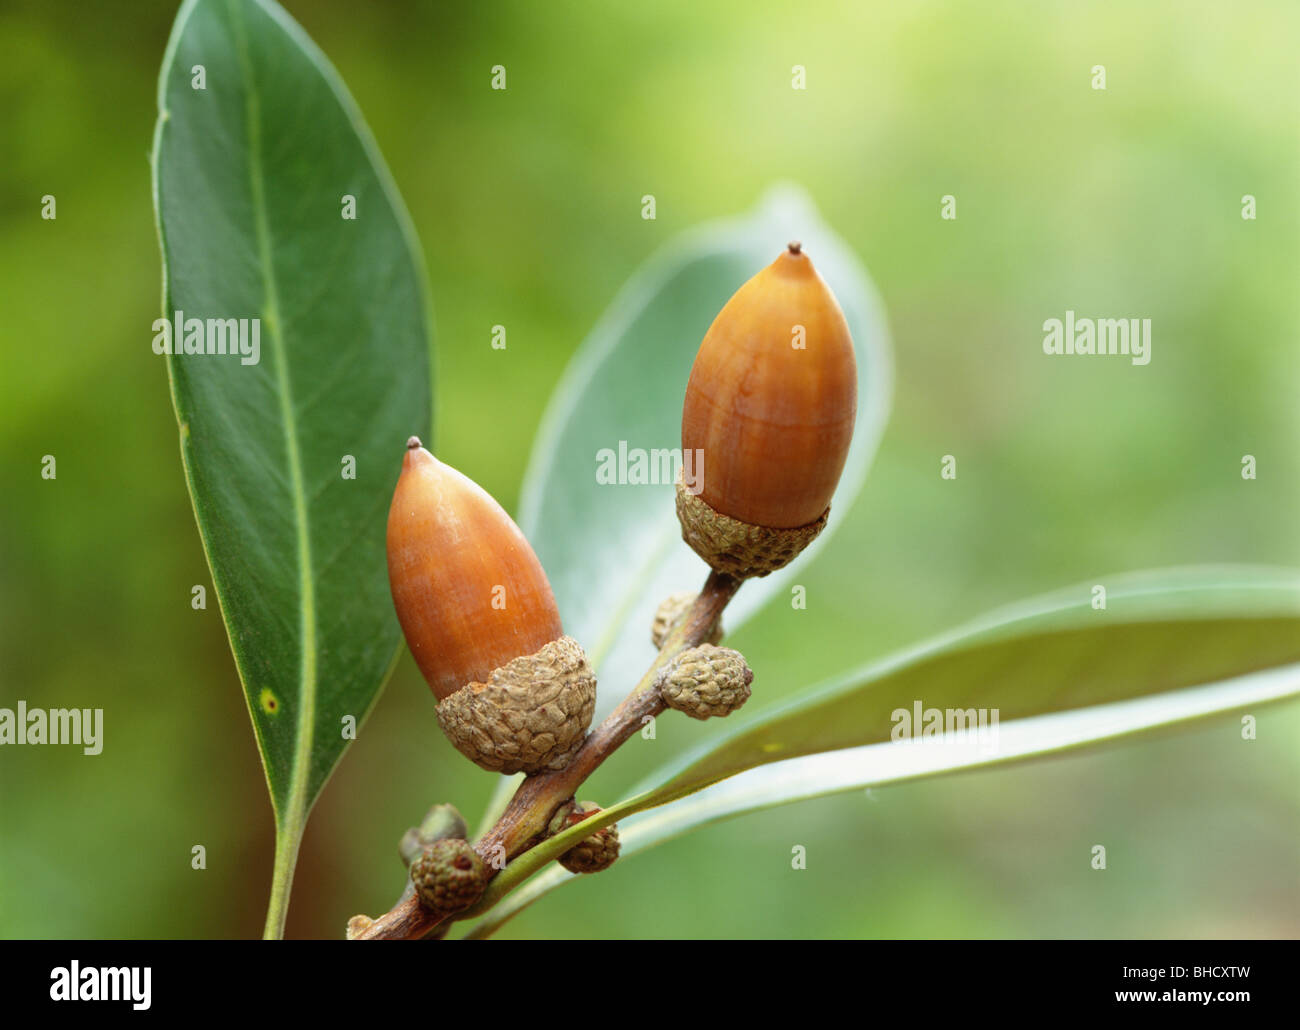 Japanese Stone Oak acorns, Fujisawa, Kanagawa Prefecture, Japan Stock Photo